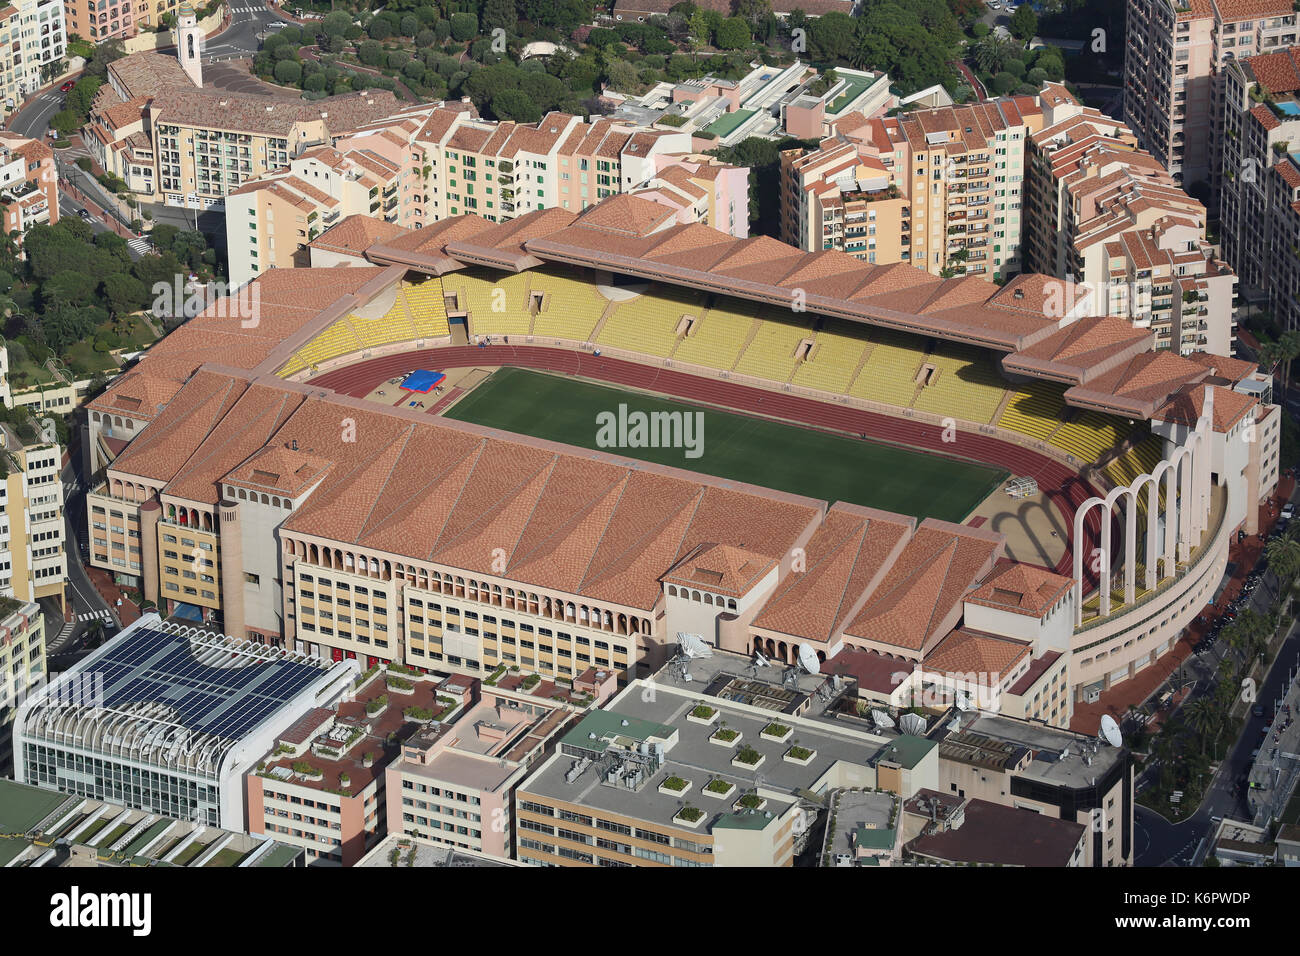 Fontvieille, monaco - 1 giugno 2016: vista aerea di stade louis ii e il quartiere di Fontvieille nel Principato di Monaco, nel sud della Francia Foto Stock